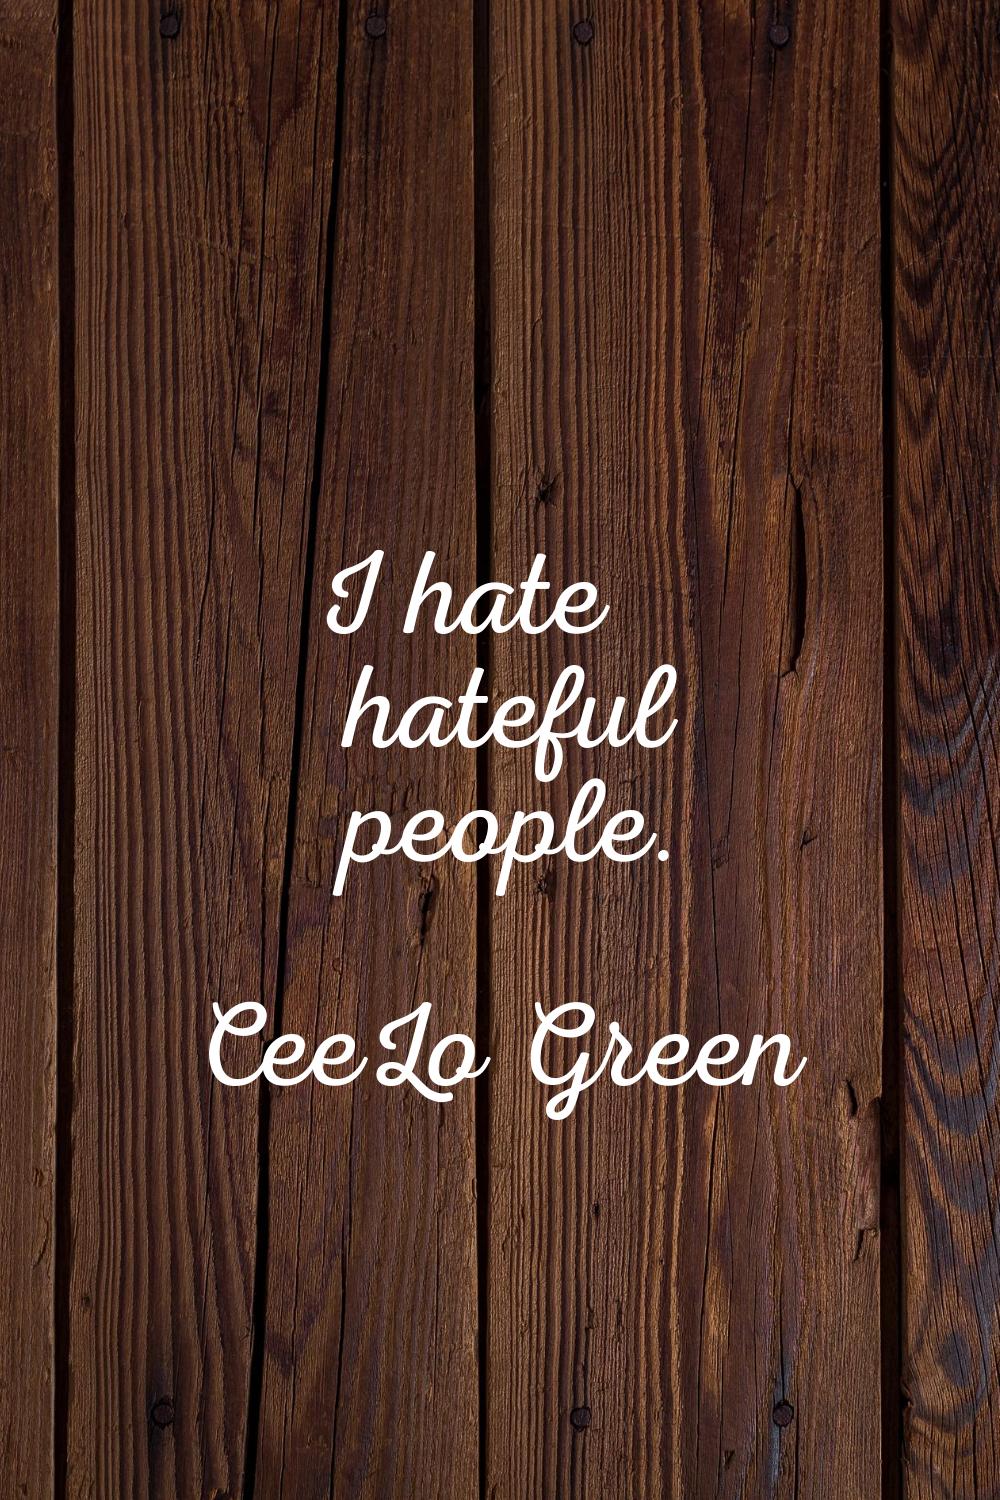 I hate hateful people.